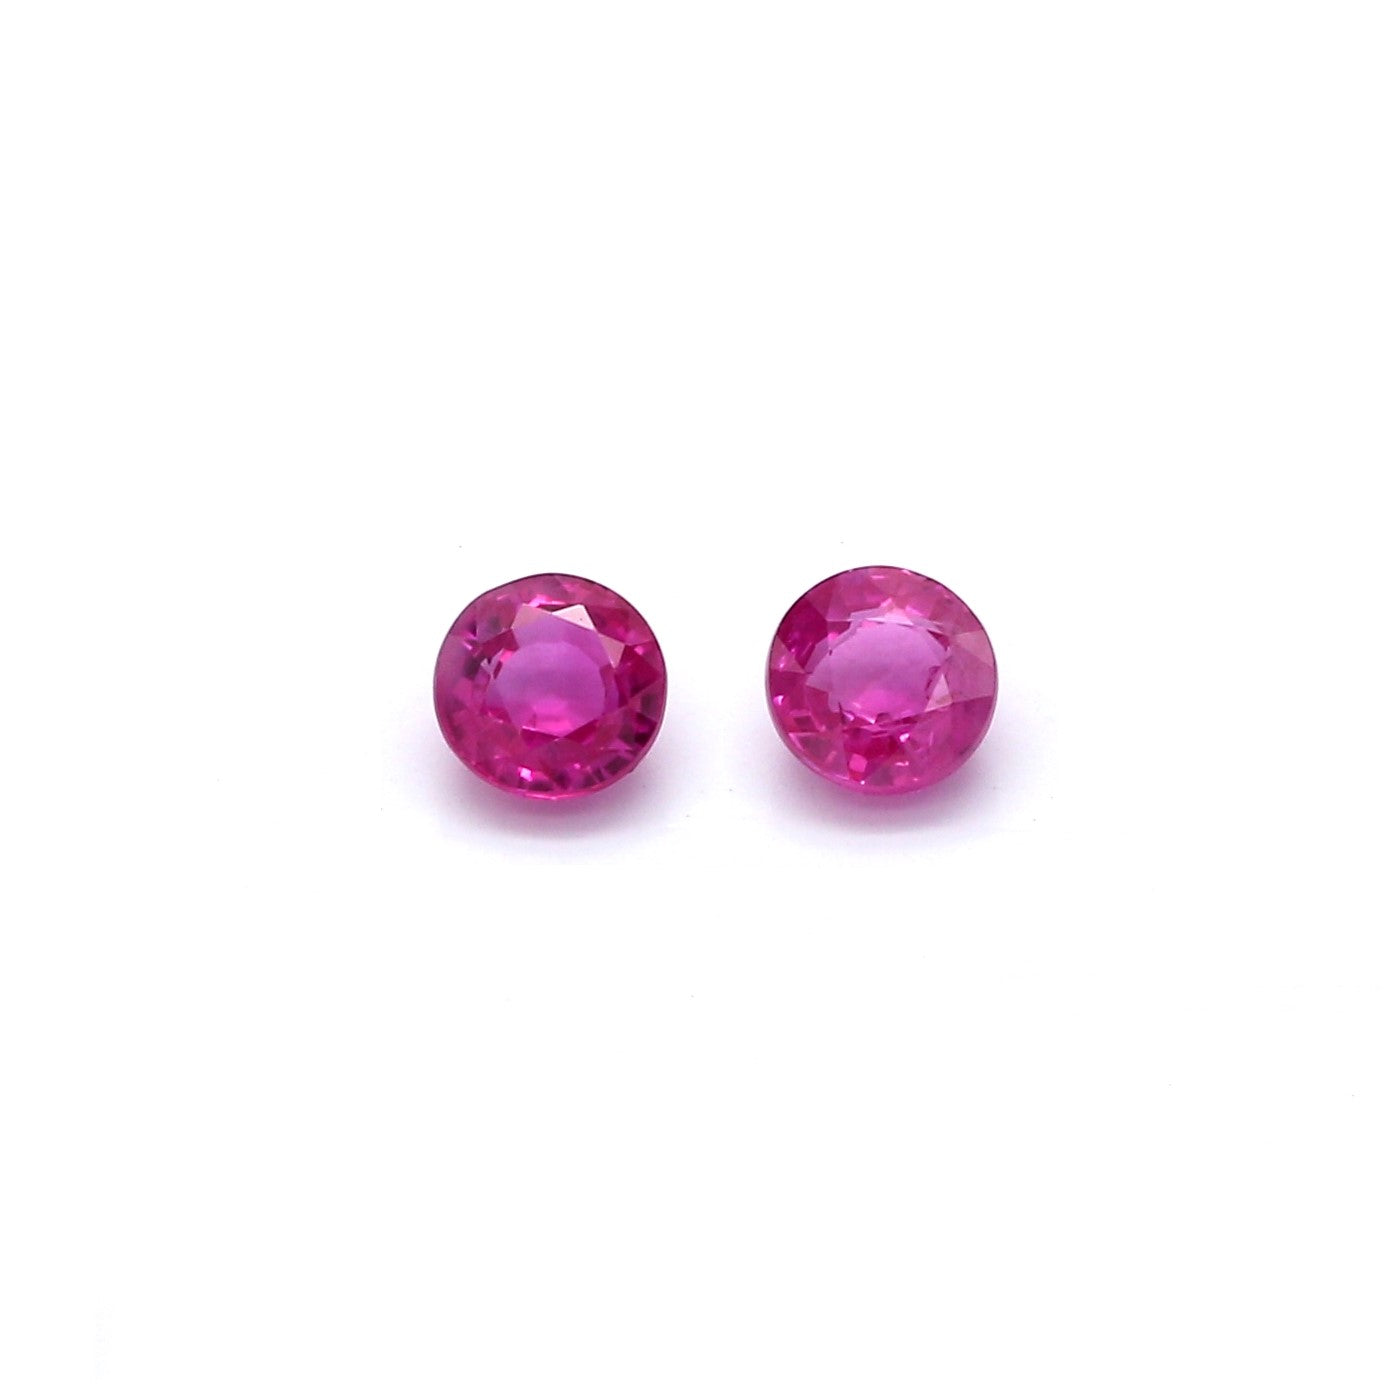 0.78ct Purplish Pink, Round Sapphire Pair, Heated, Vietnam - 4.06 - 4.13 x 2.4mm